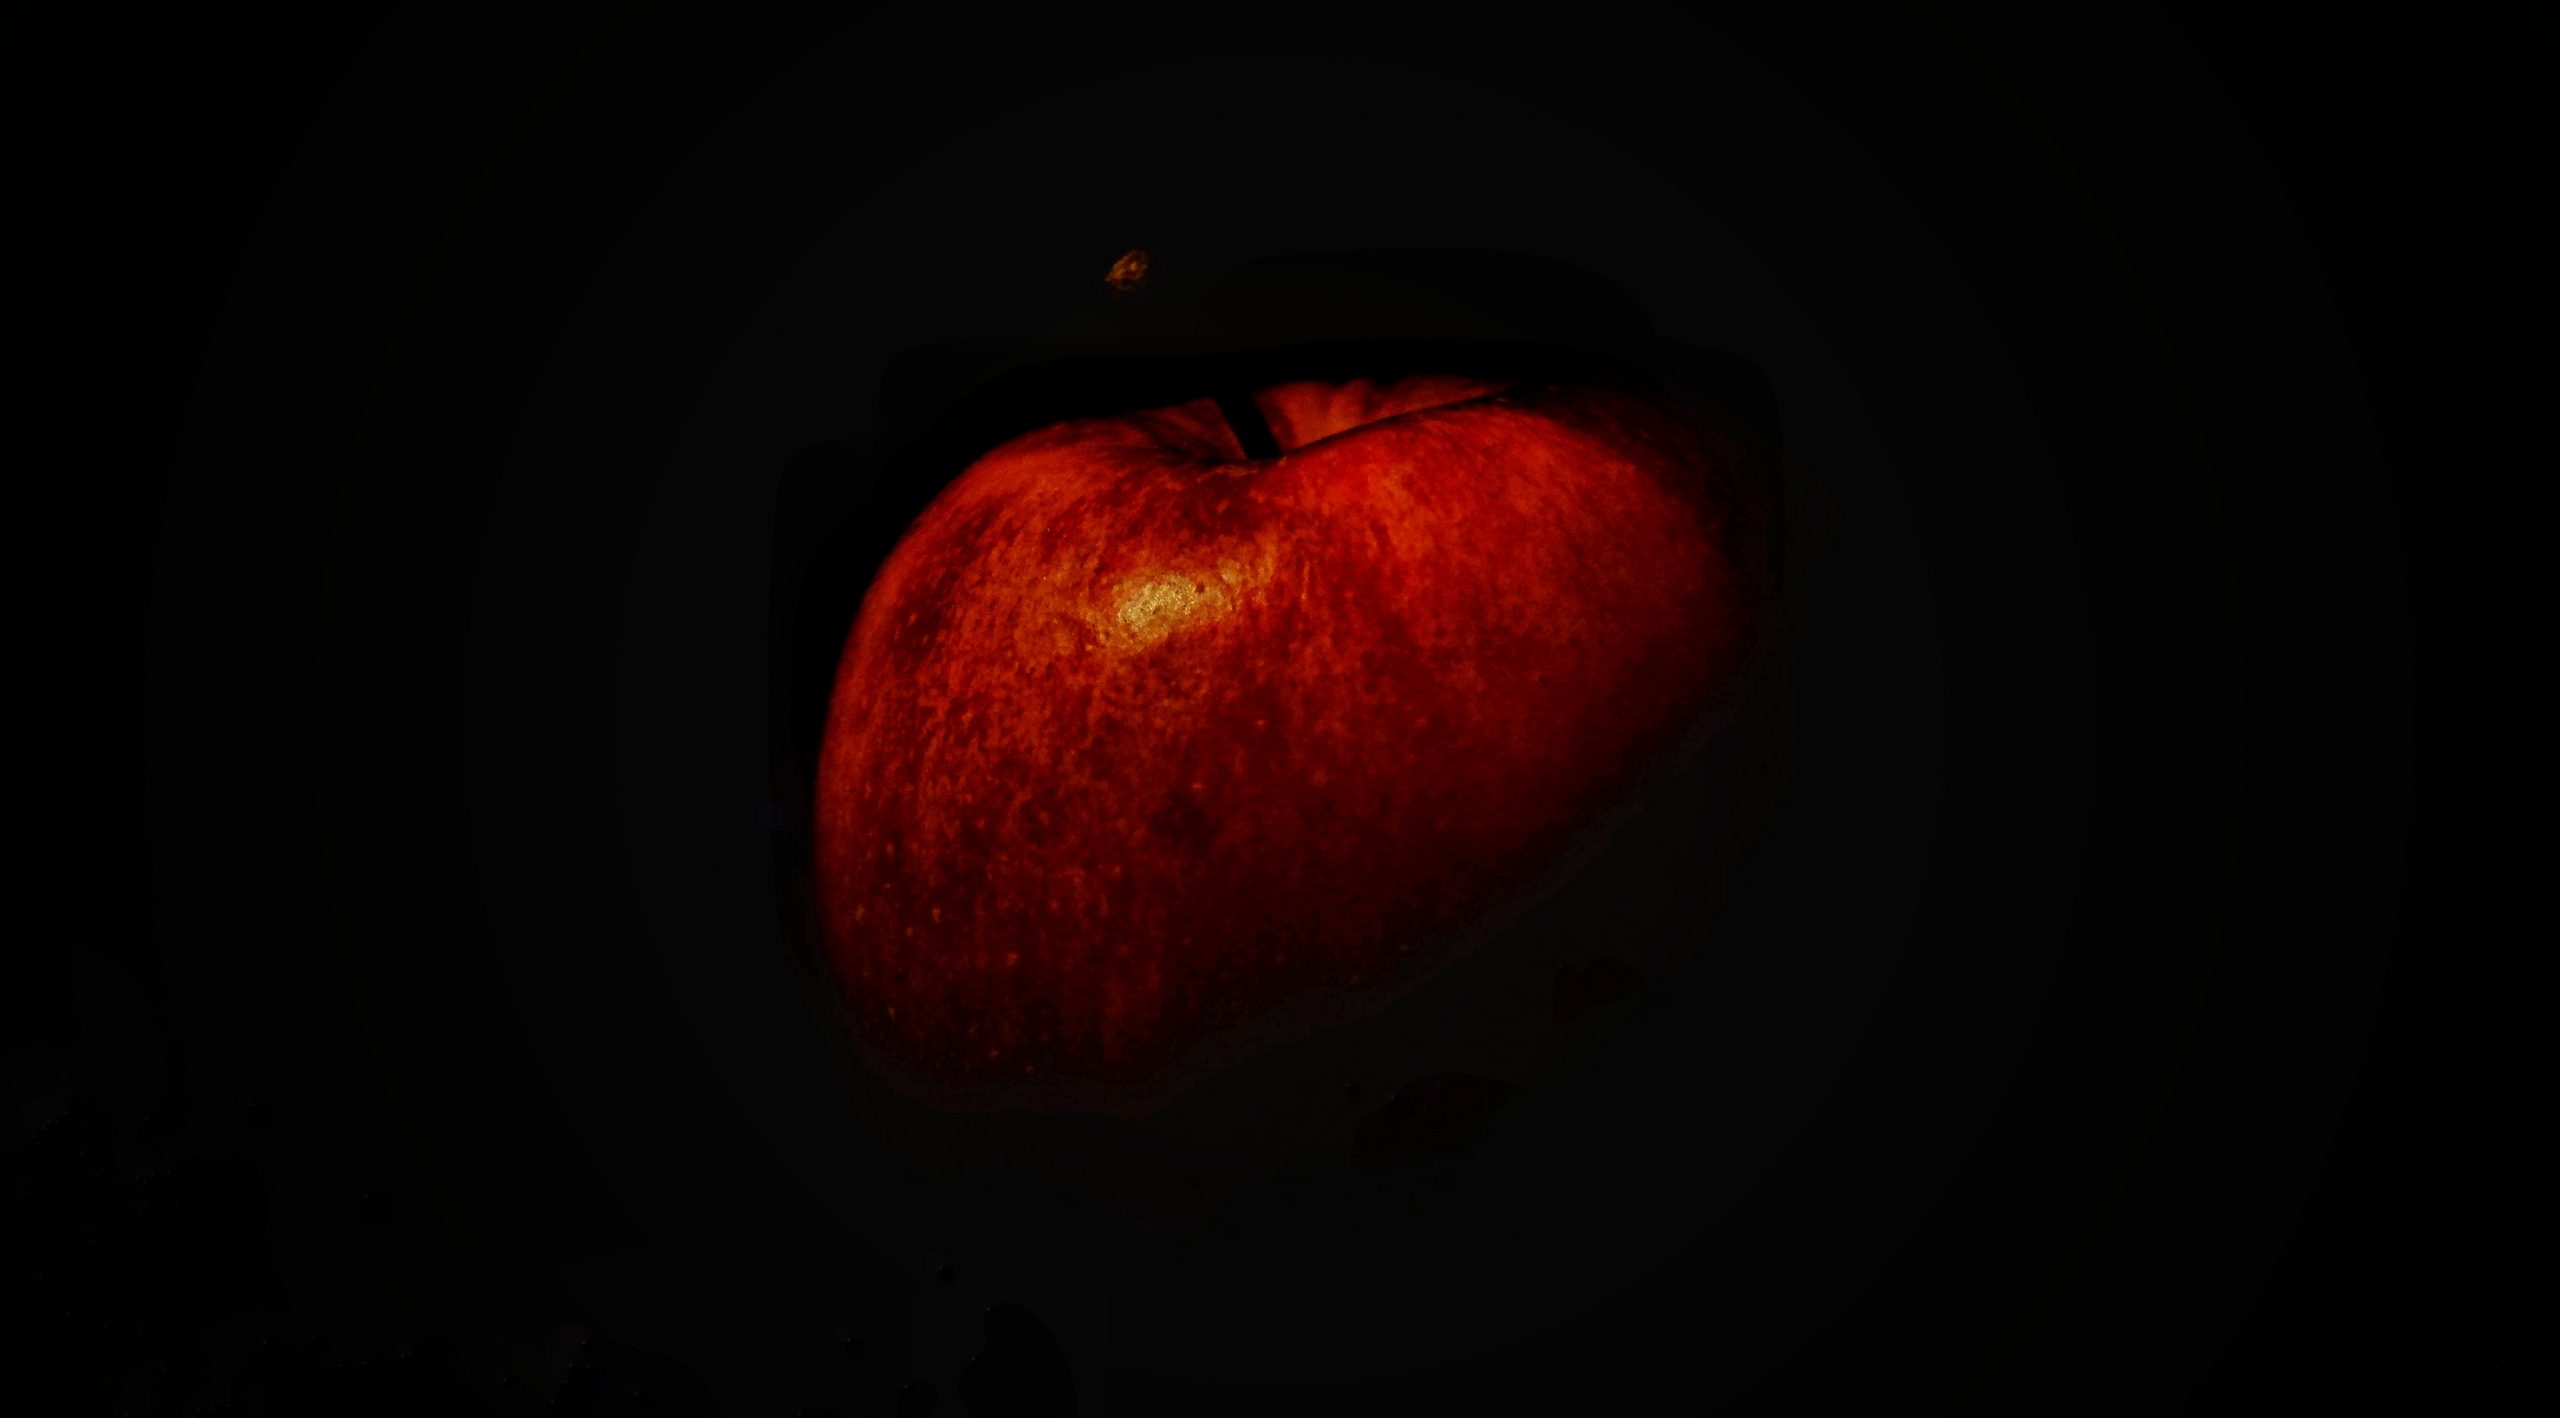 Apple on Dark Background